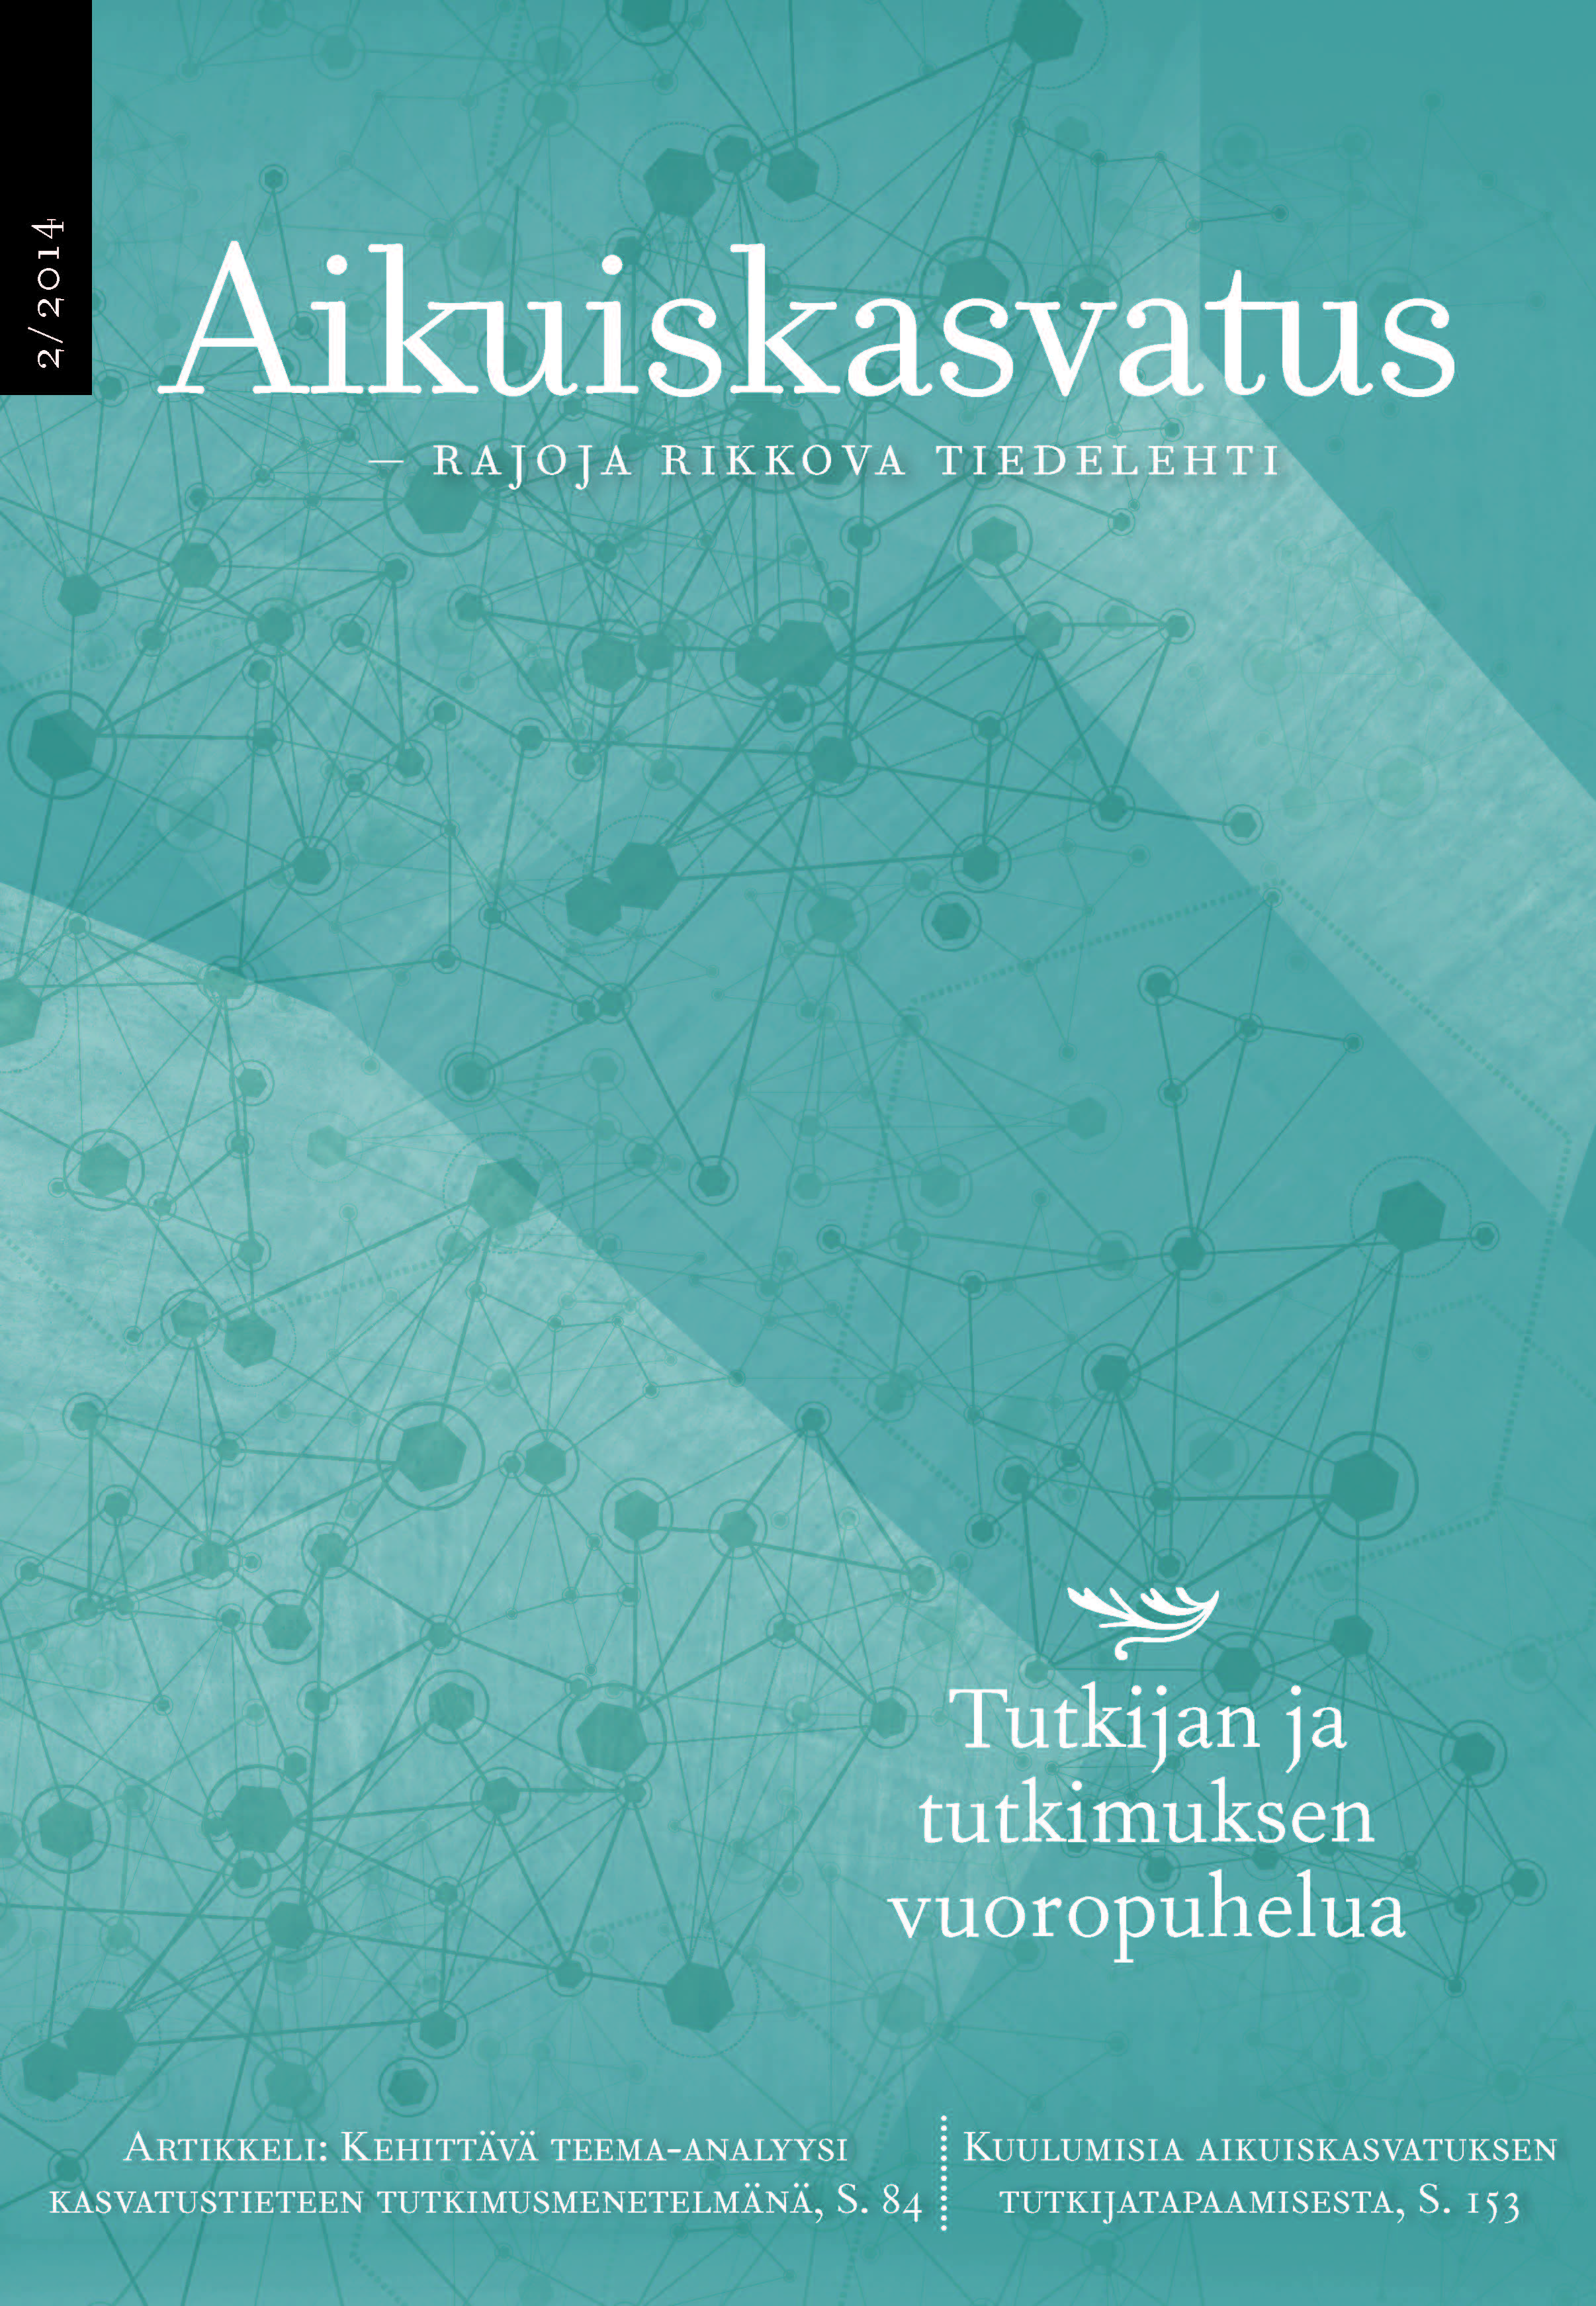 					Näytä Vol 34 Nro 2 (2014): Aikuiskasvatus 2/2014: Tutkijan ja tutkimuksen vuoropuhelua
				